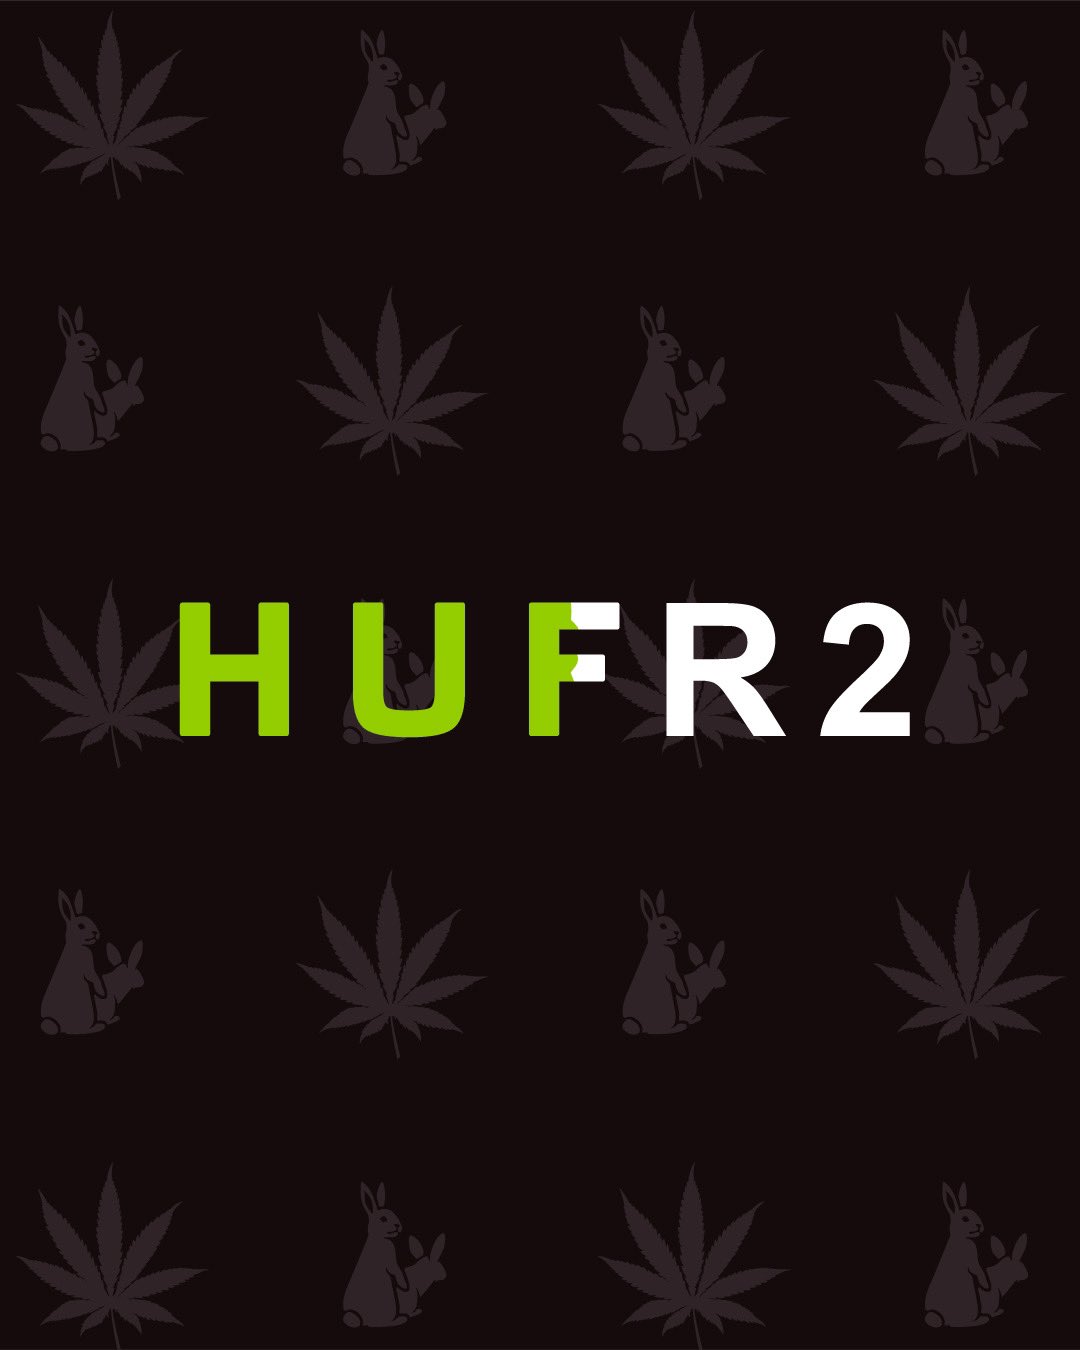 【9/18 発売予定】#FR2 × HUF 最新コラボレーション (エフアールツー ハフ)